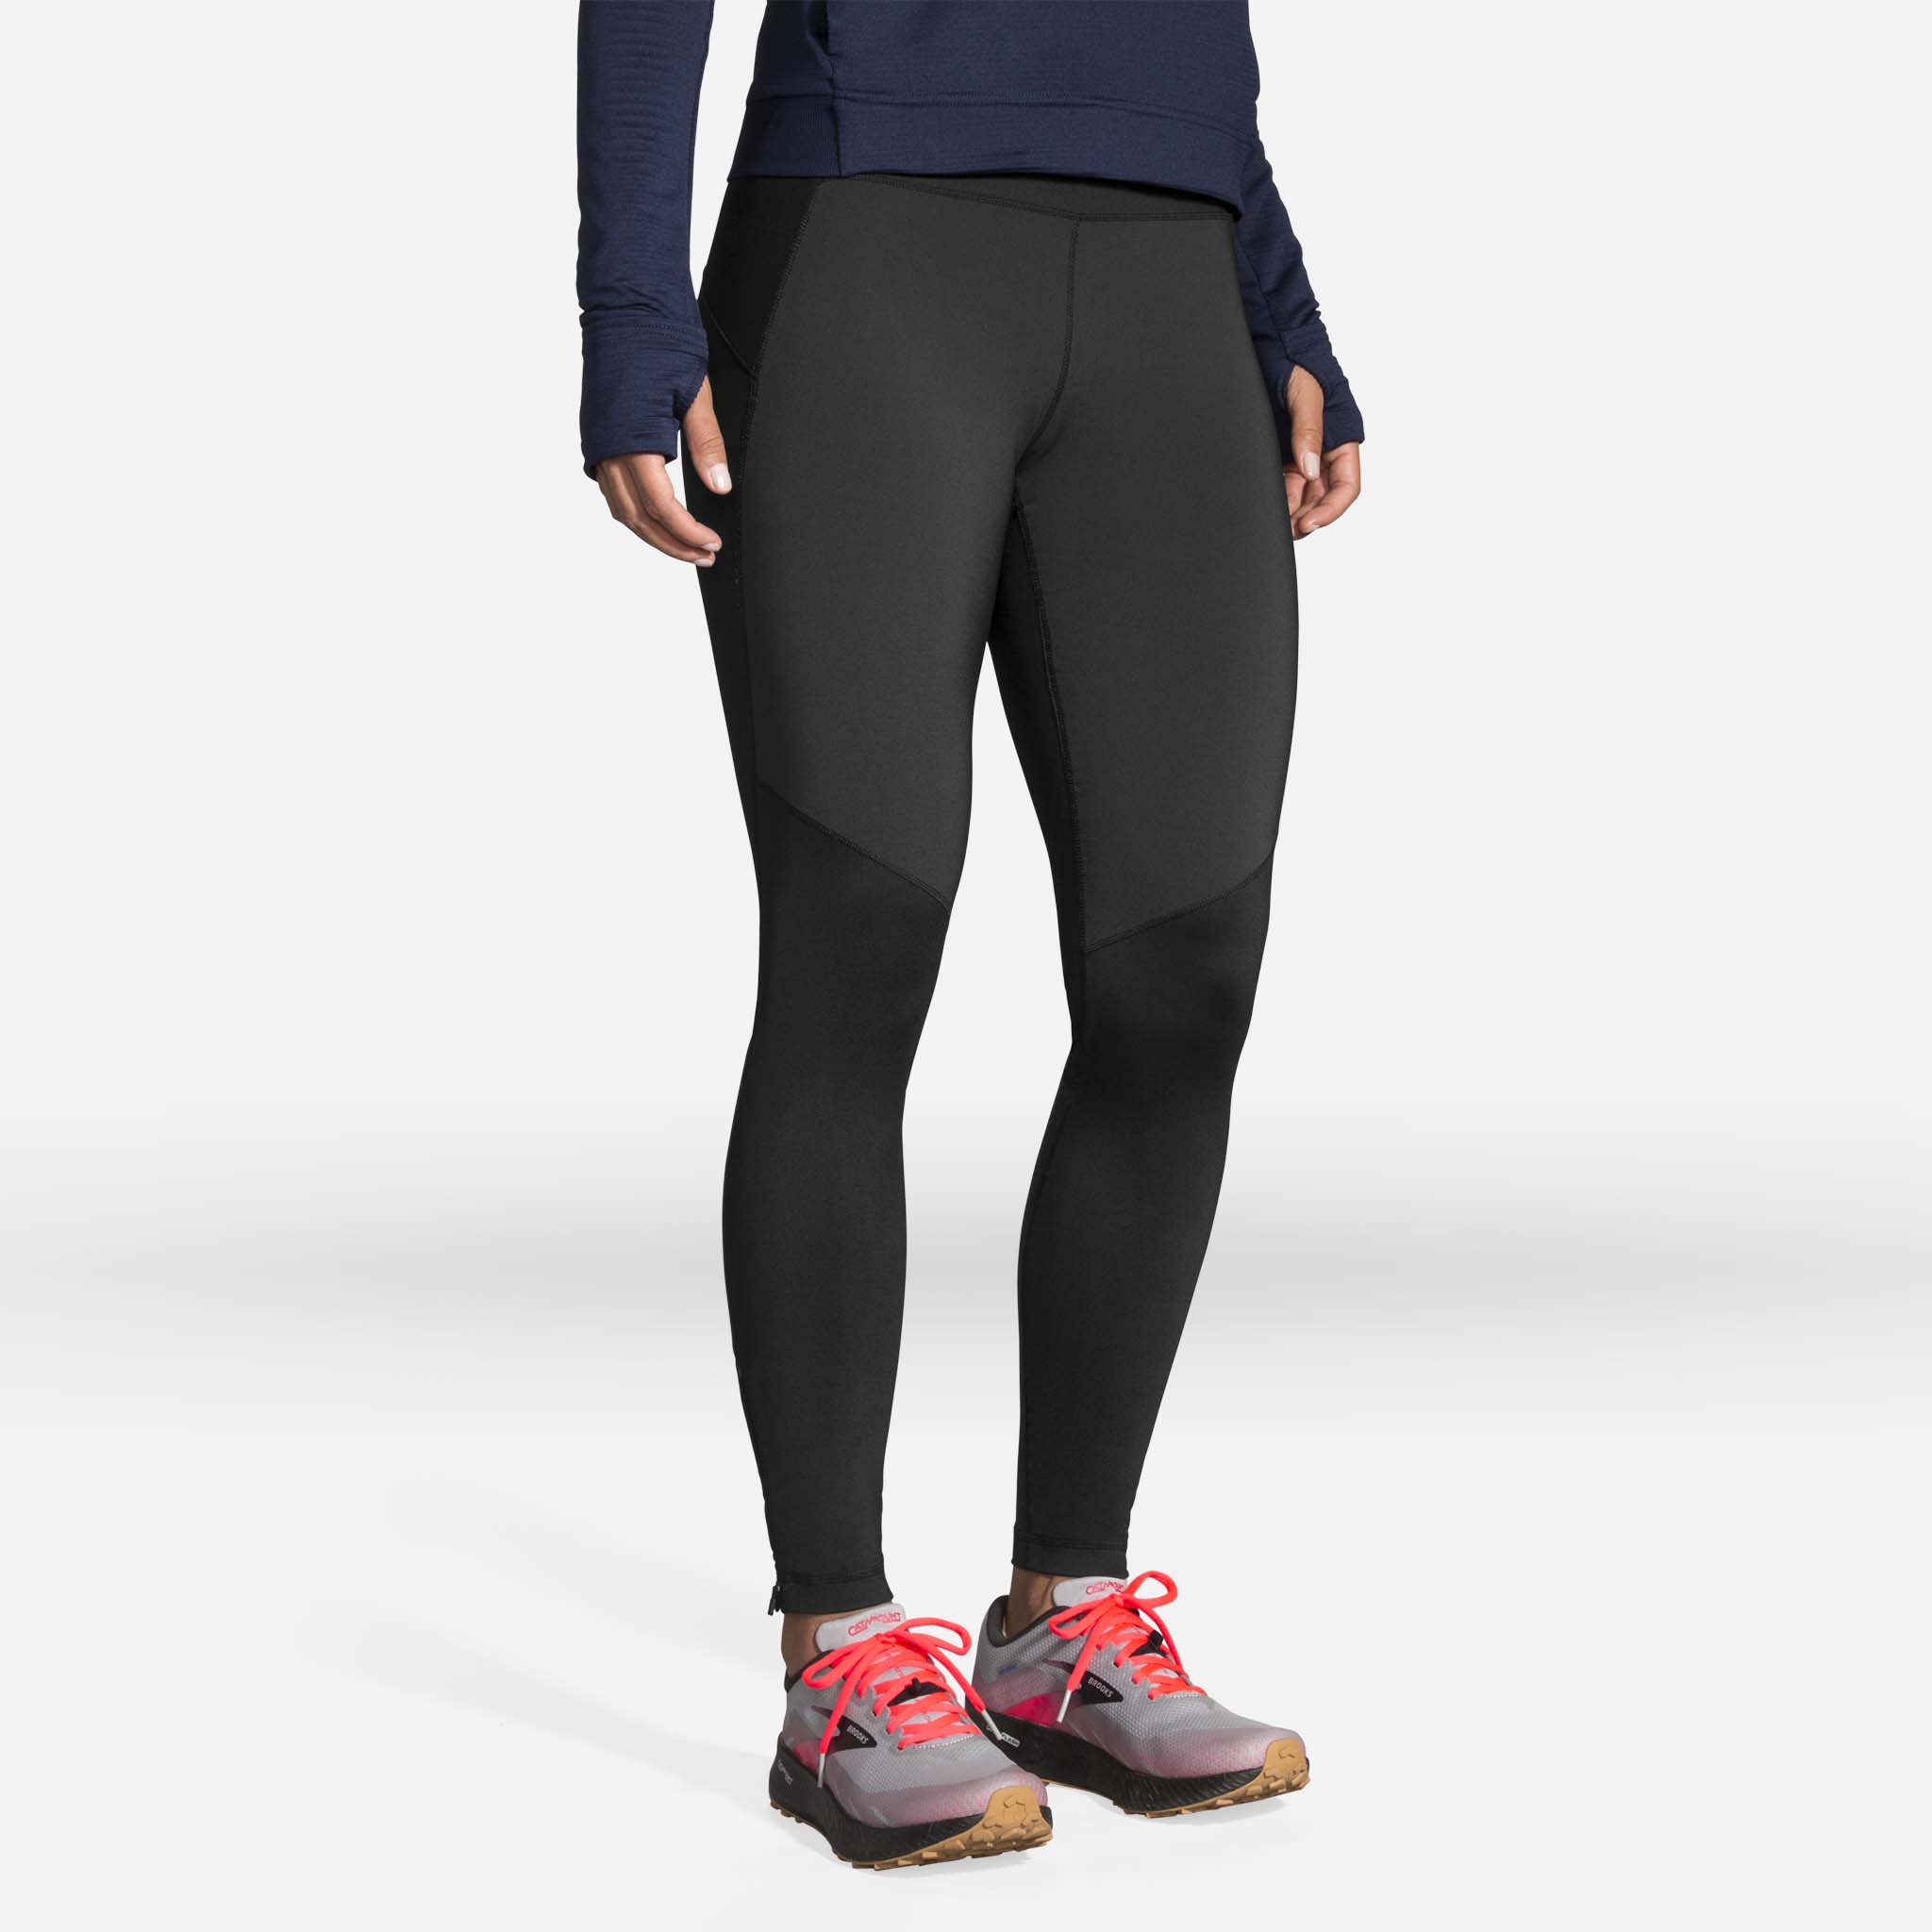 Brooks Switch Hybrid running pants for women – Soccer Sport Fitness